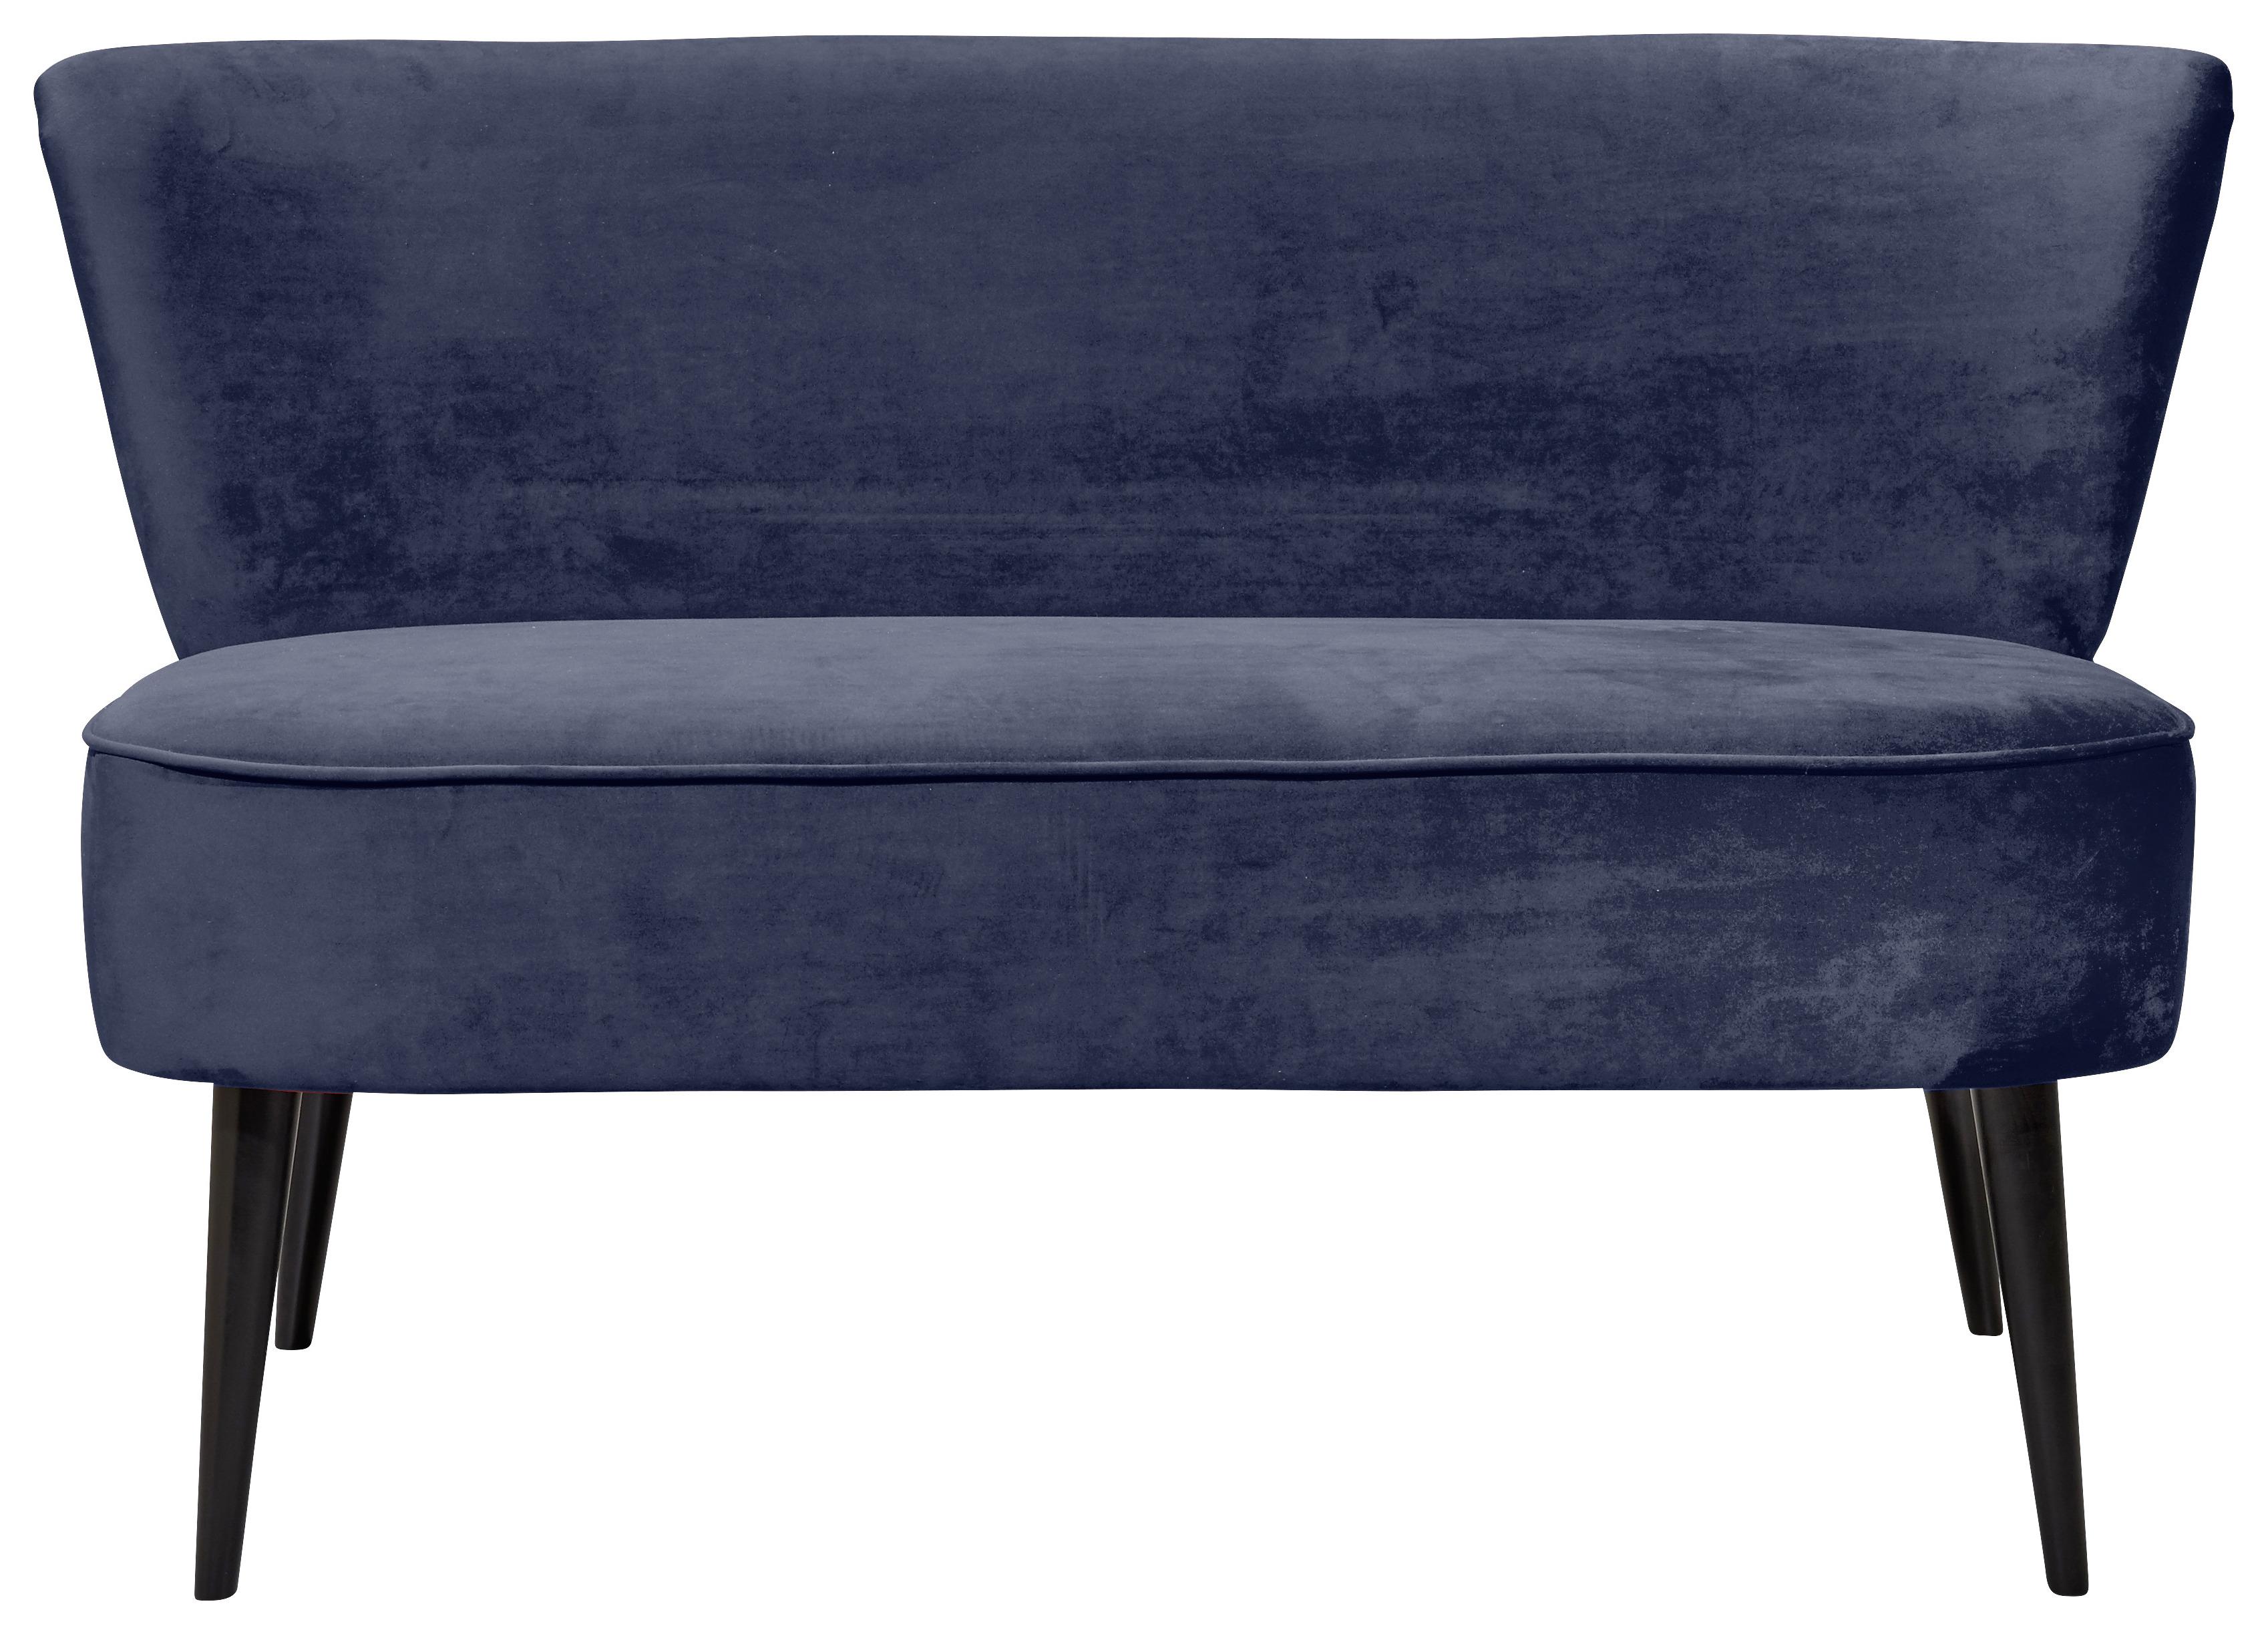 Sitzbank mit Lehne Gepolstert Samt Blau Lord B: 140 cm - Blau/Schwarz, Trend, Holzwerkstoff/Textil (140/83/75cm) - MID.YOU